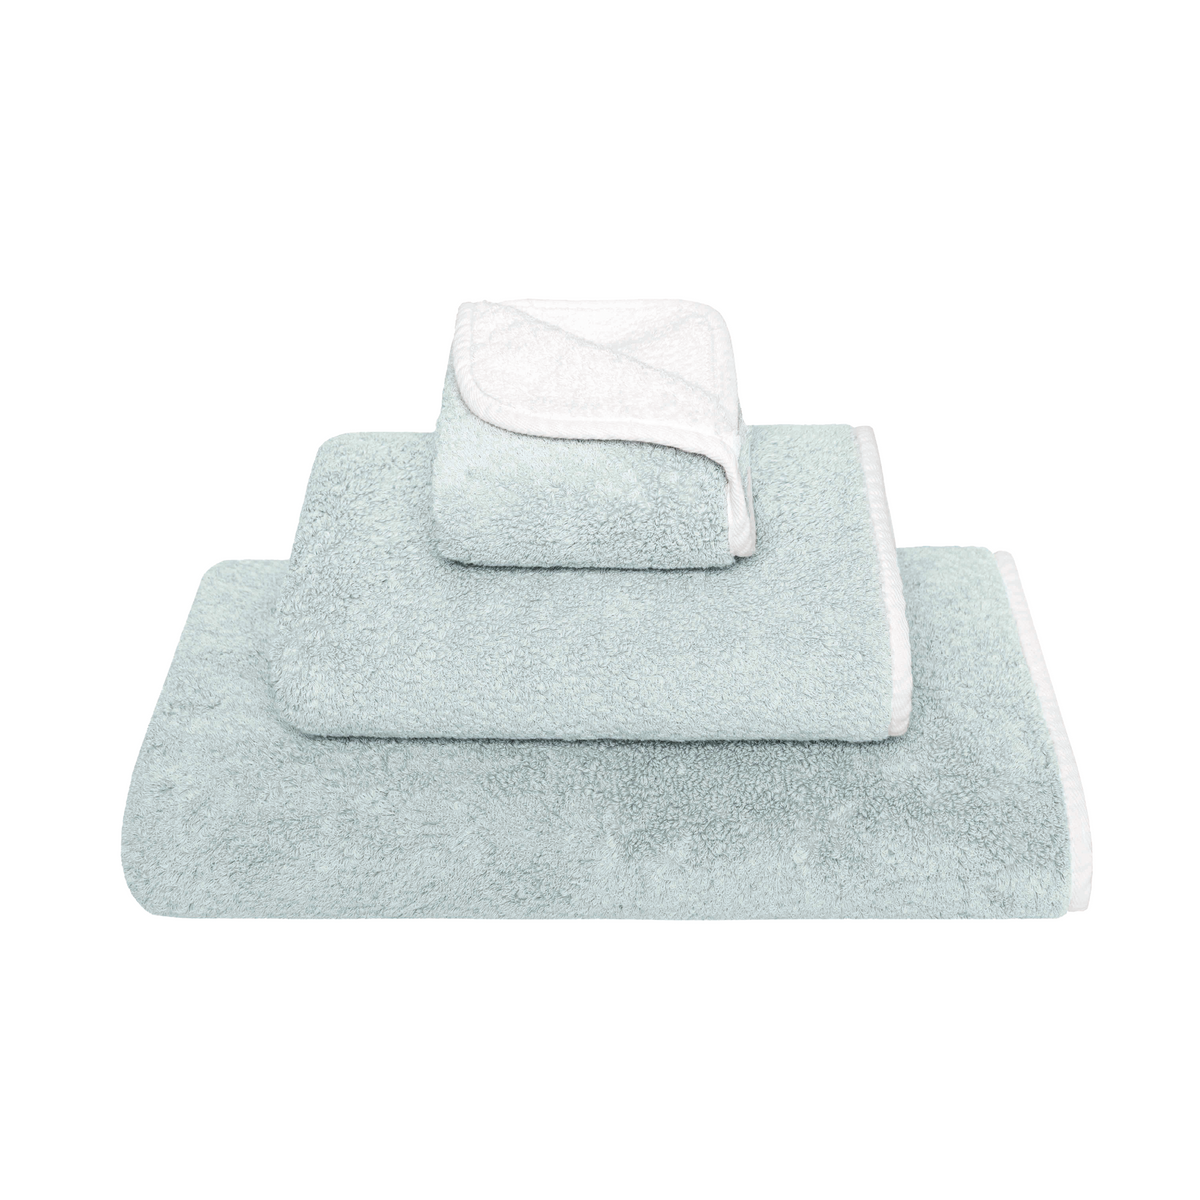 Clear Image of Graccioza Bicolore Bath Towels in Sea Mist White